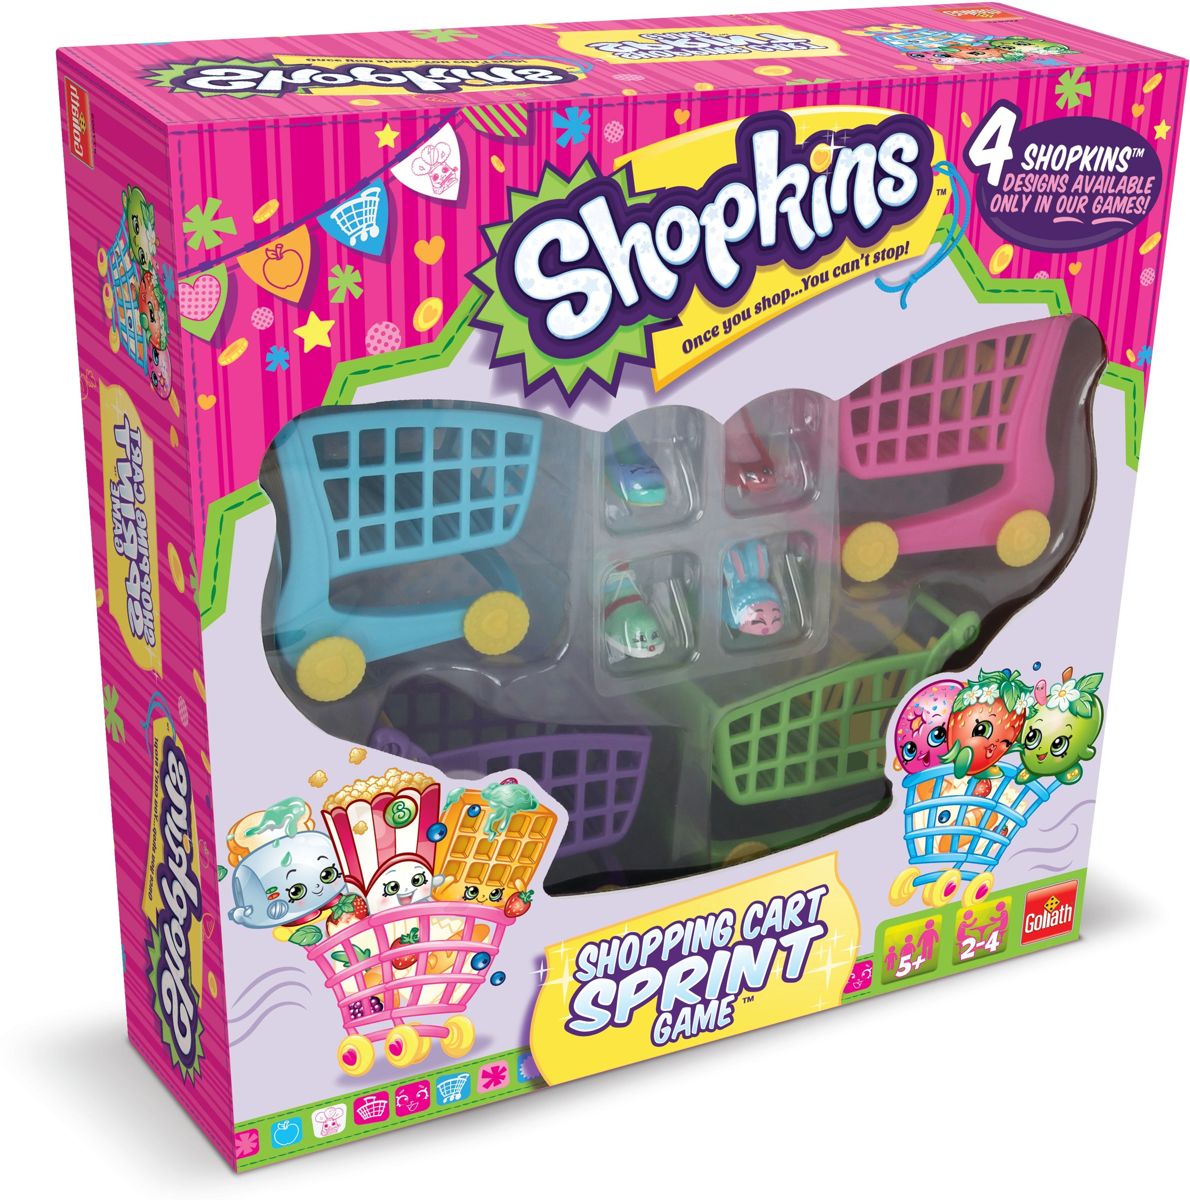 Shopkins Shopping Cart Sprint Game